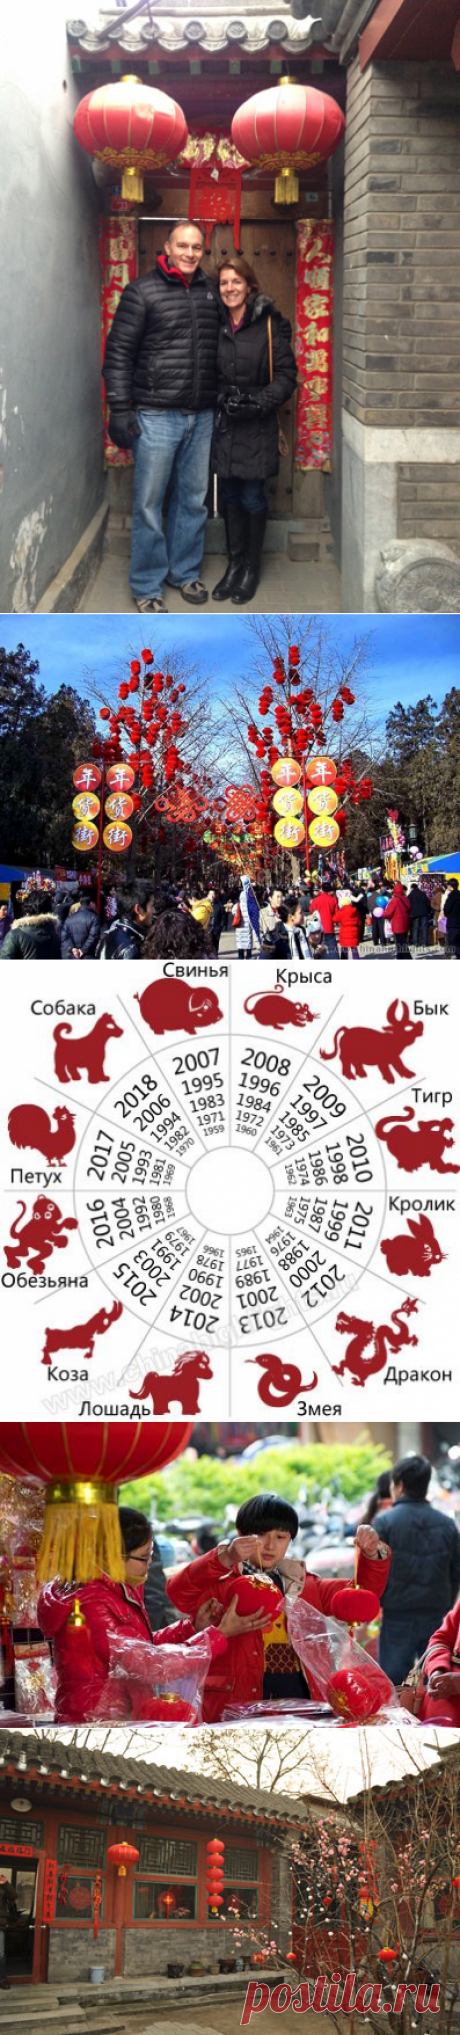 Китайский Новый Год 2021（Праздник Весны）— Даты, Традиции, Приметы| Чайна Хайлайтс